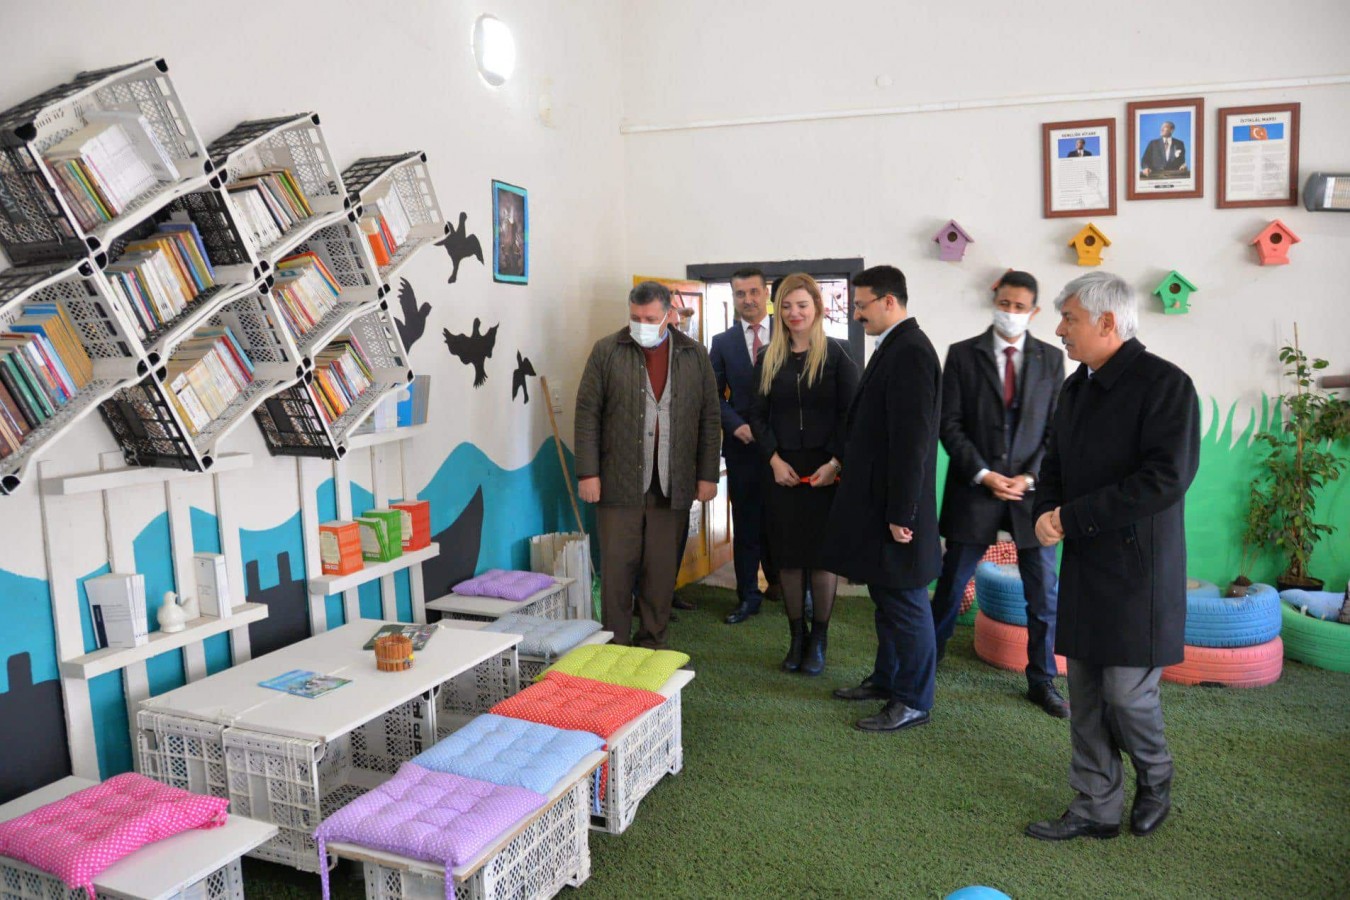 Atık malzemelerden kurulan kütüphane açıldı;